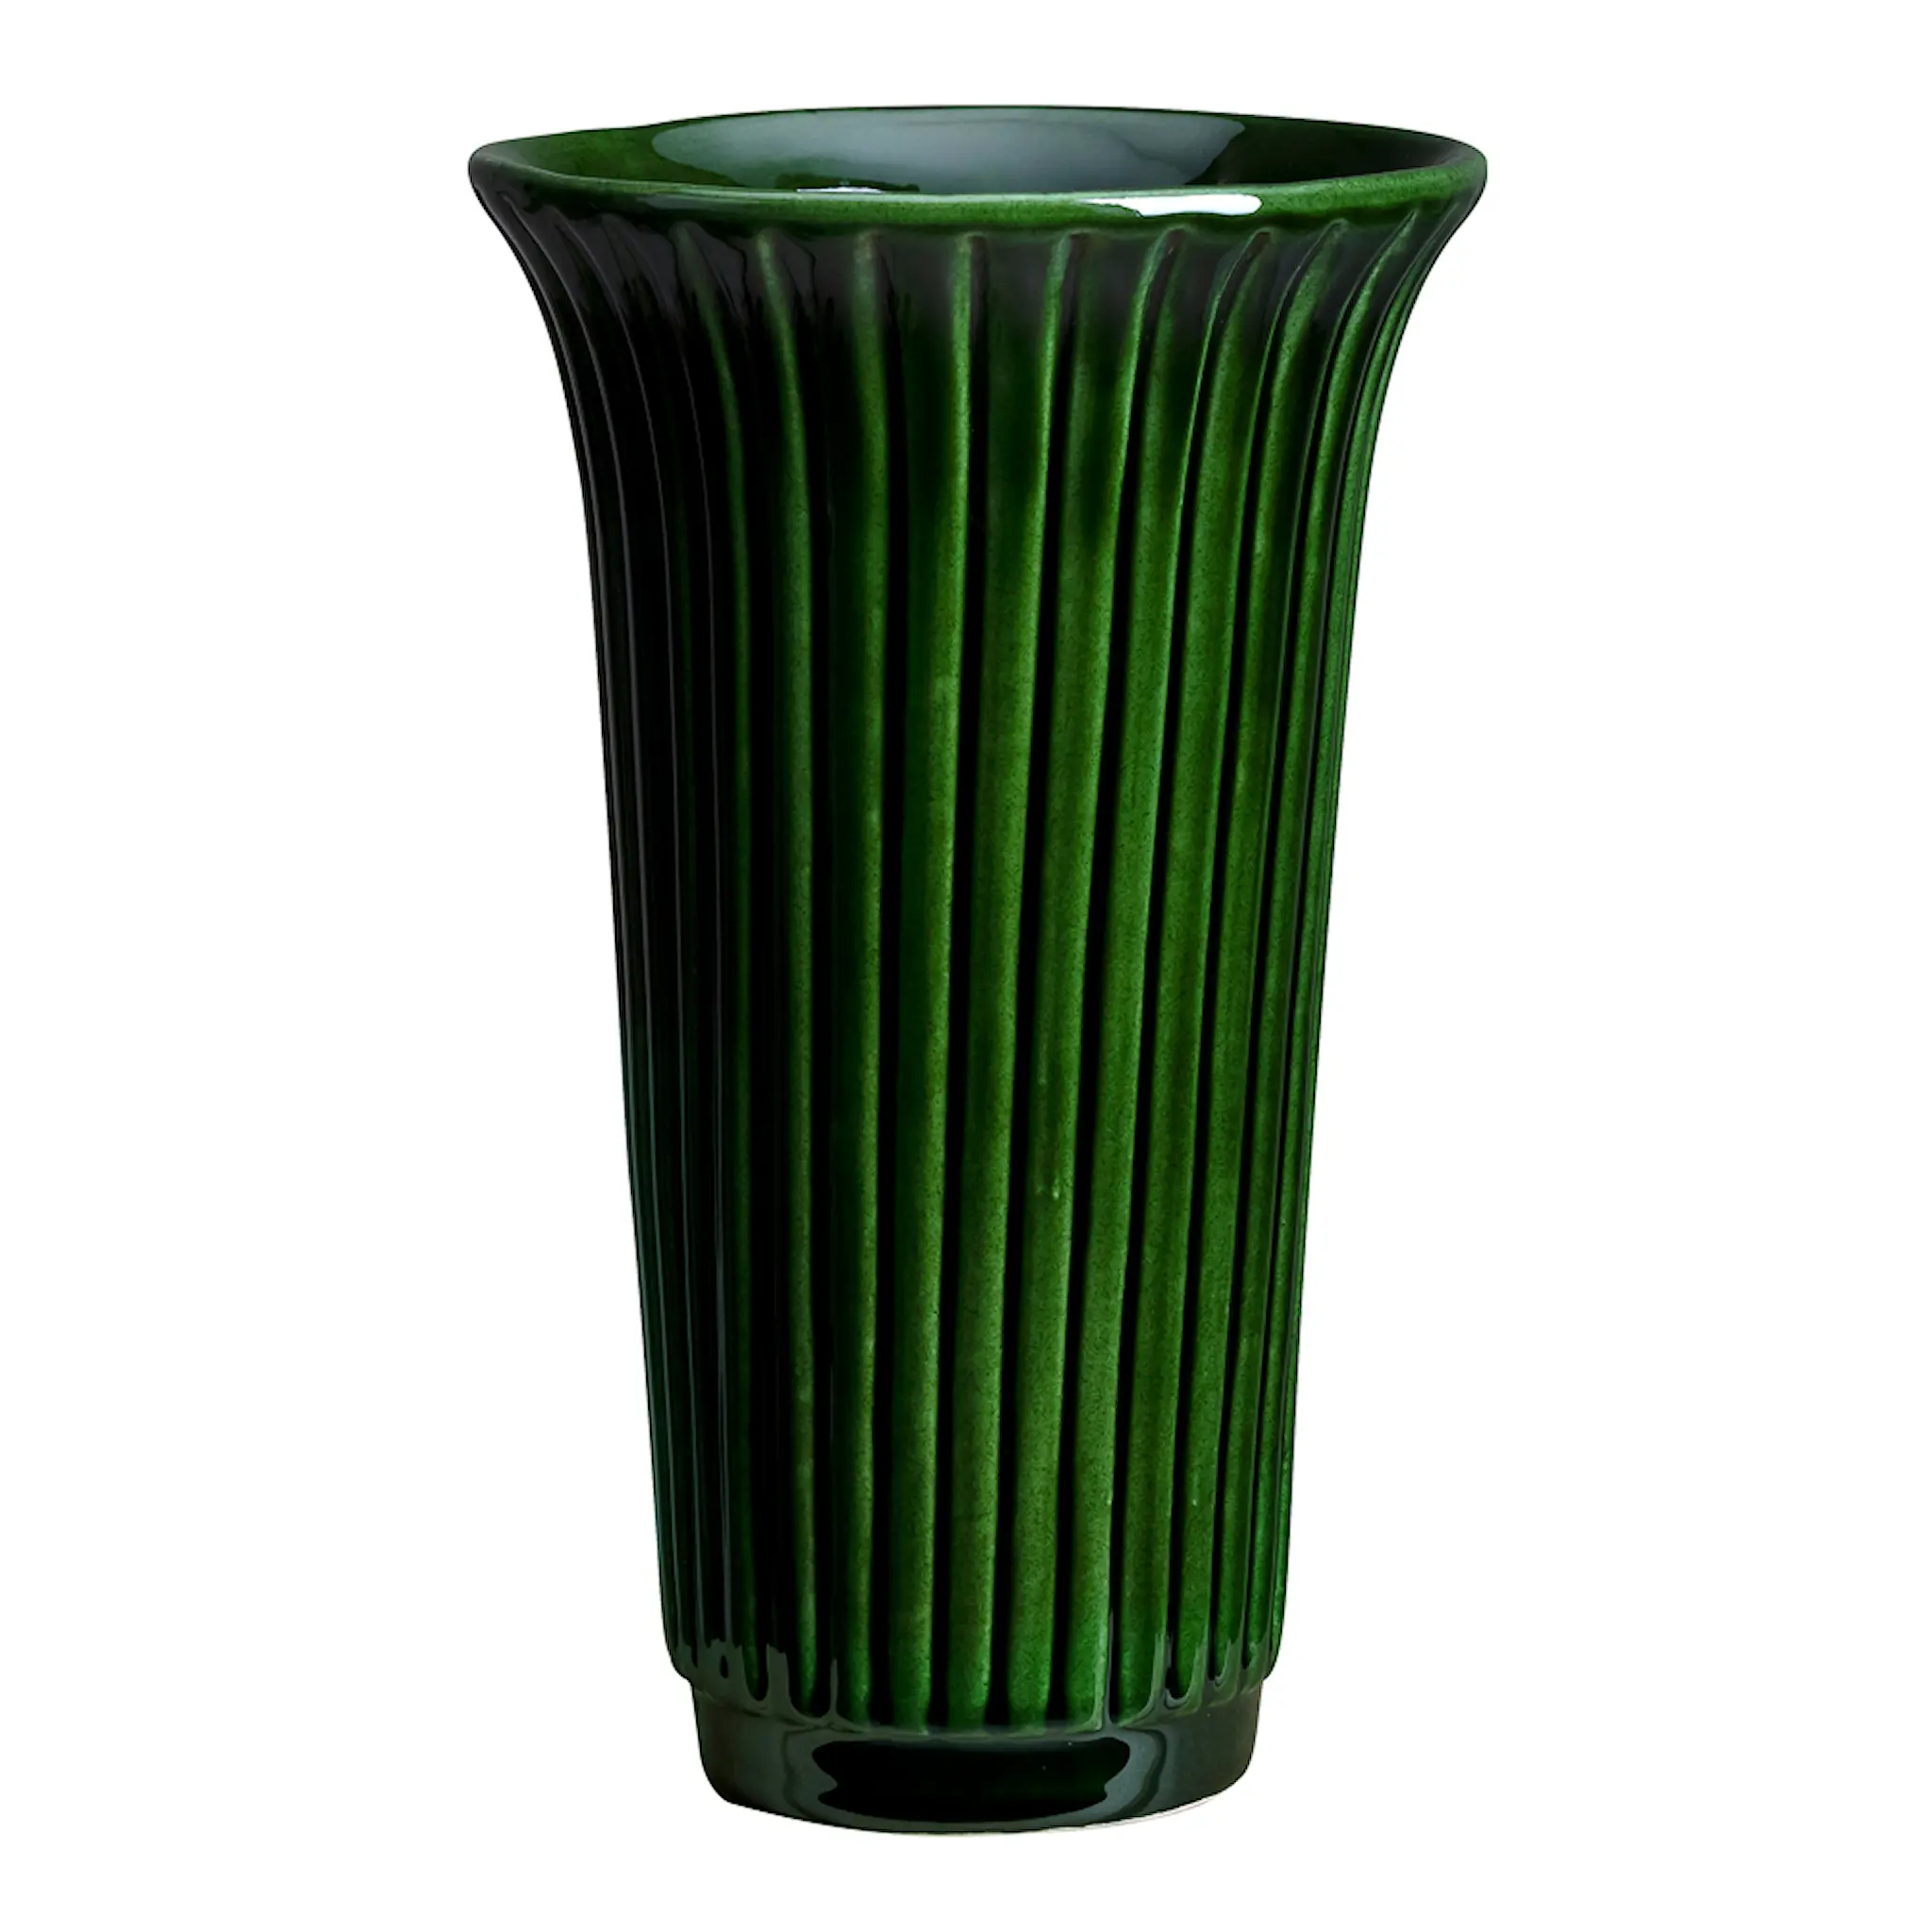 Bergs Potter Daisy vase 12 cm grønn emerald